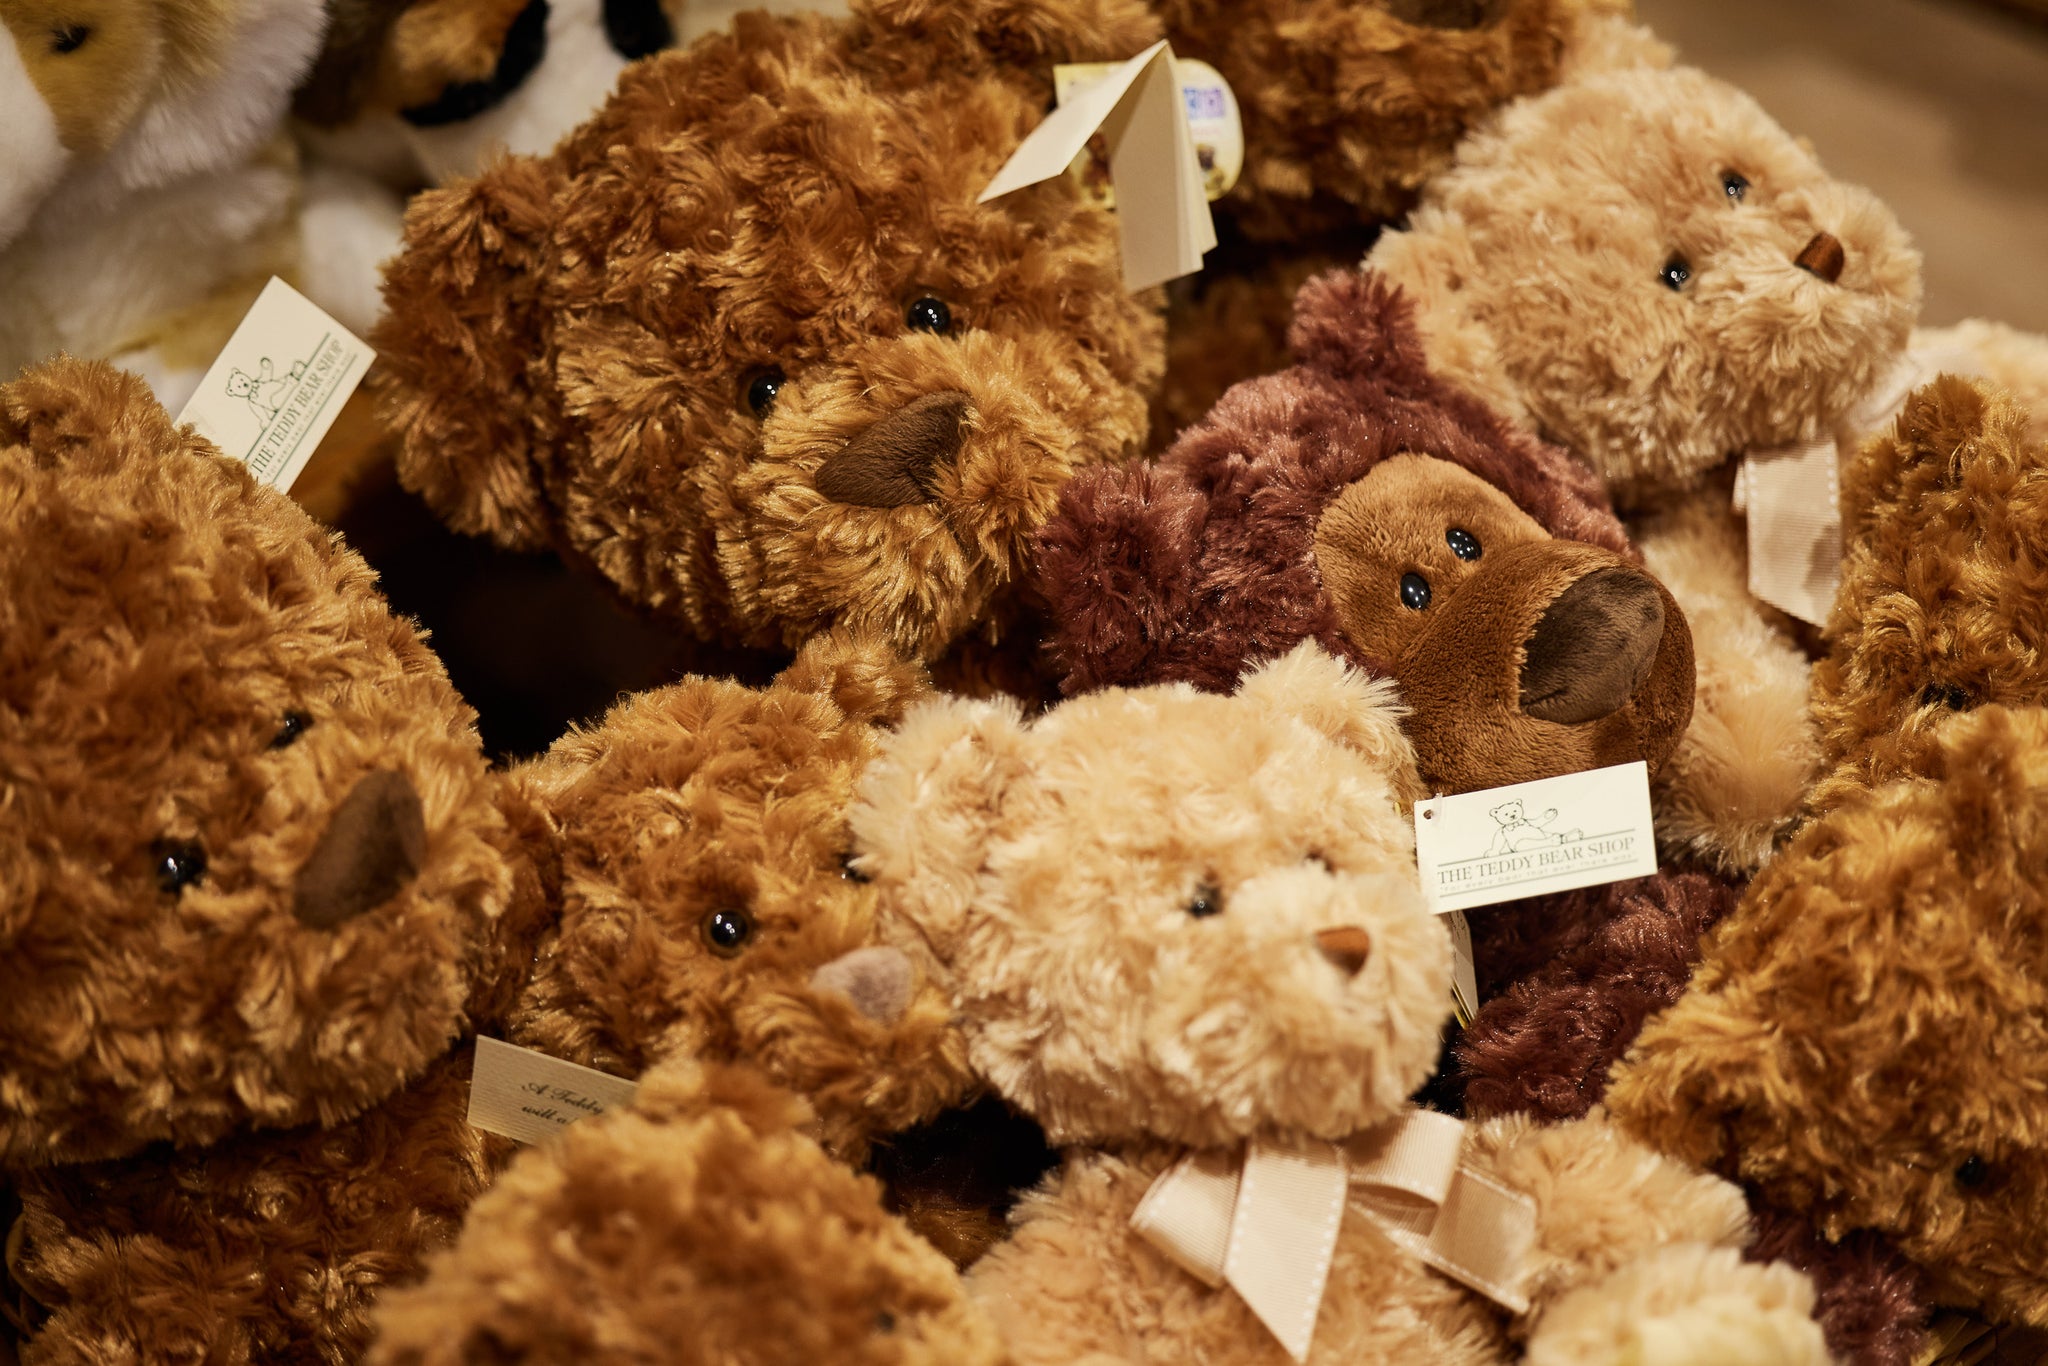 Steiff Teddy Bears Official Online and High Street Teddy Bear Shop